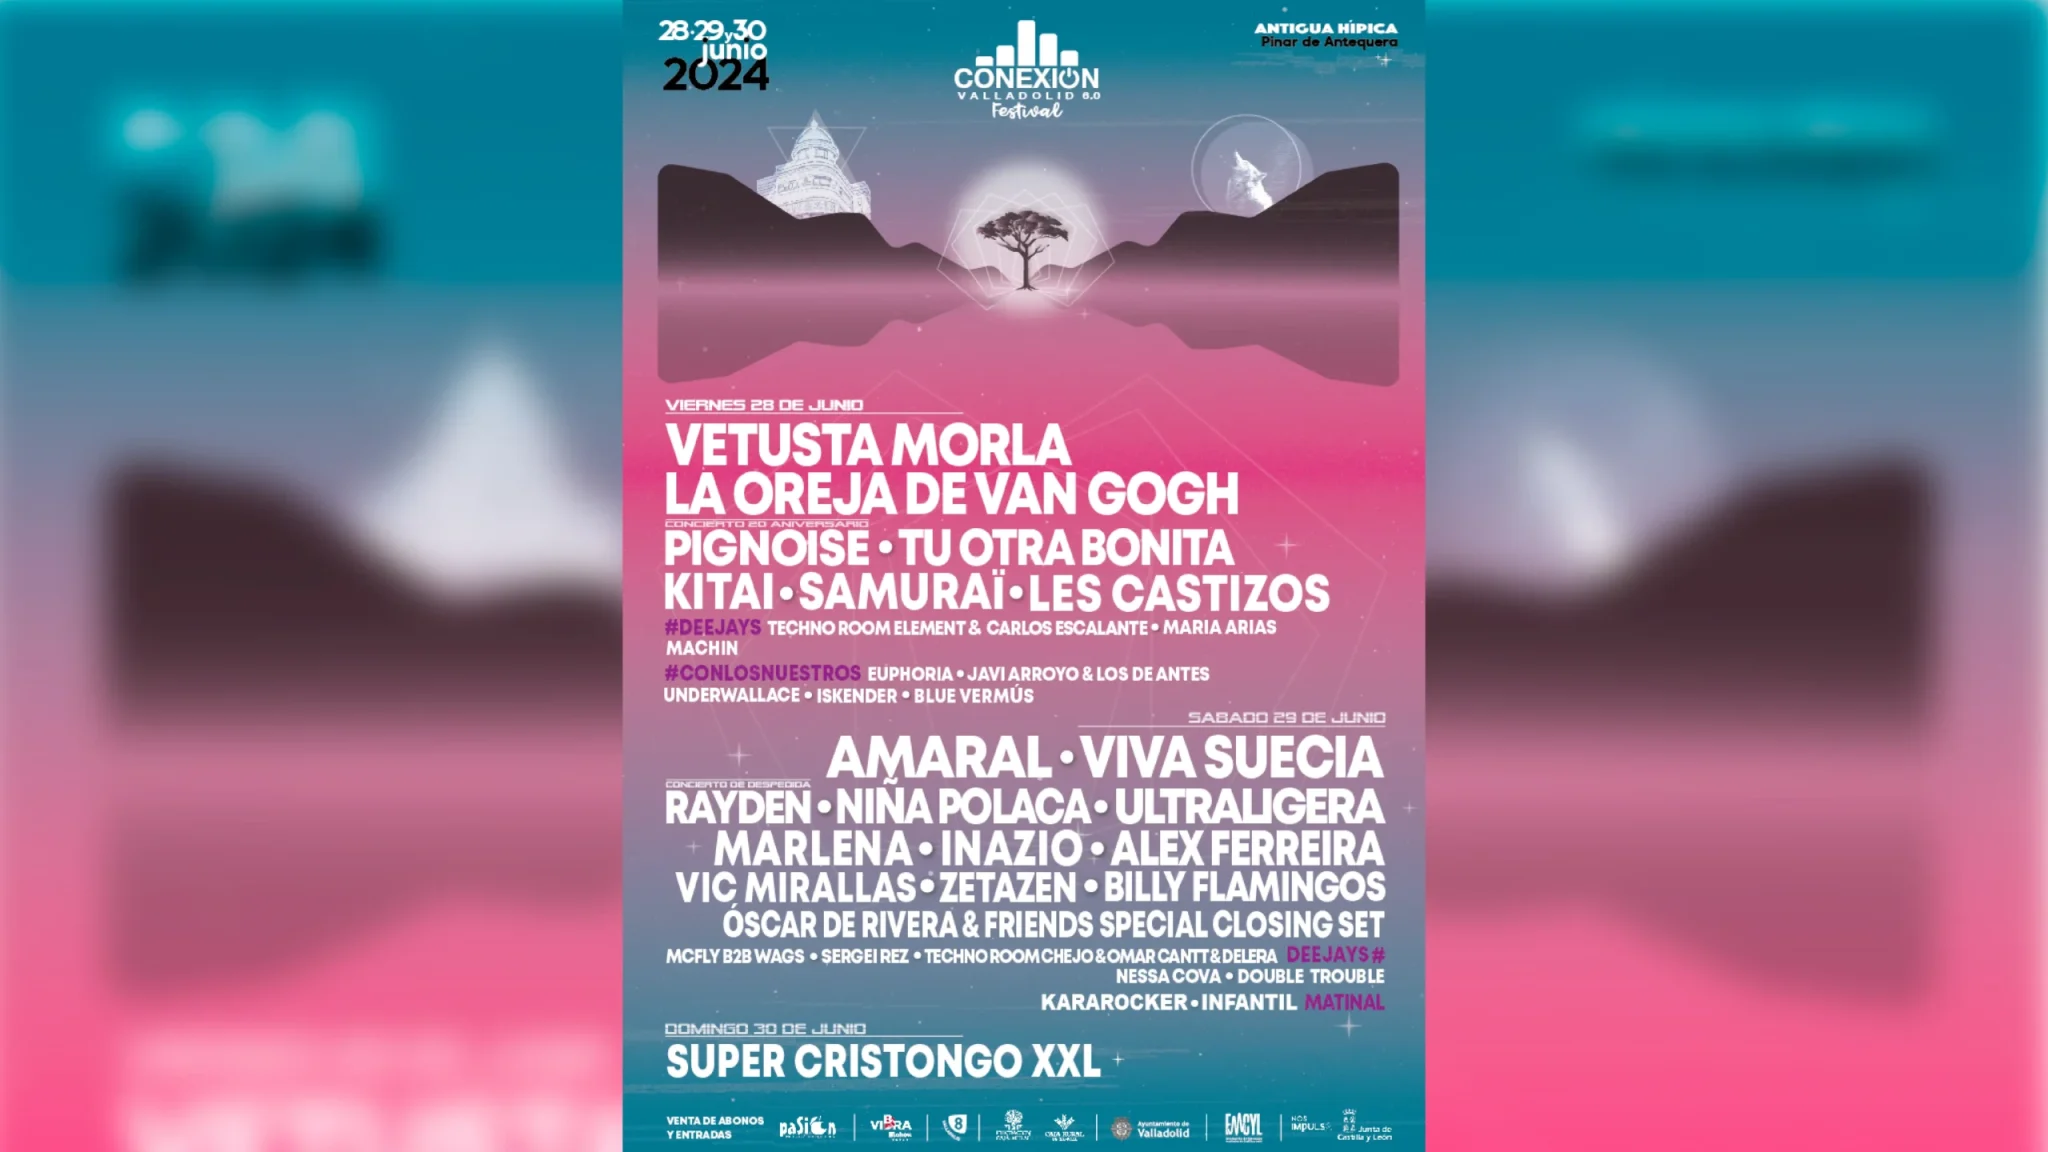 El Festival "Conexión Valladolid" se hace más grande